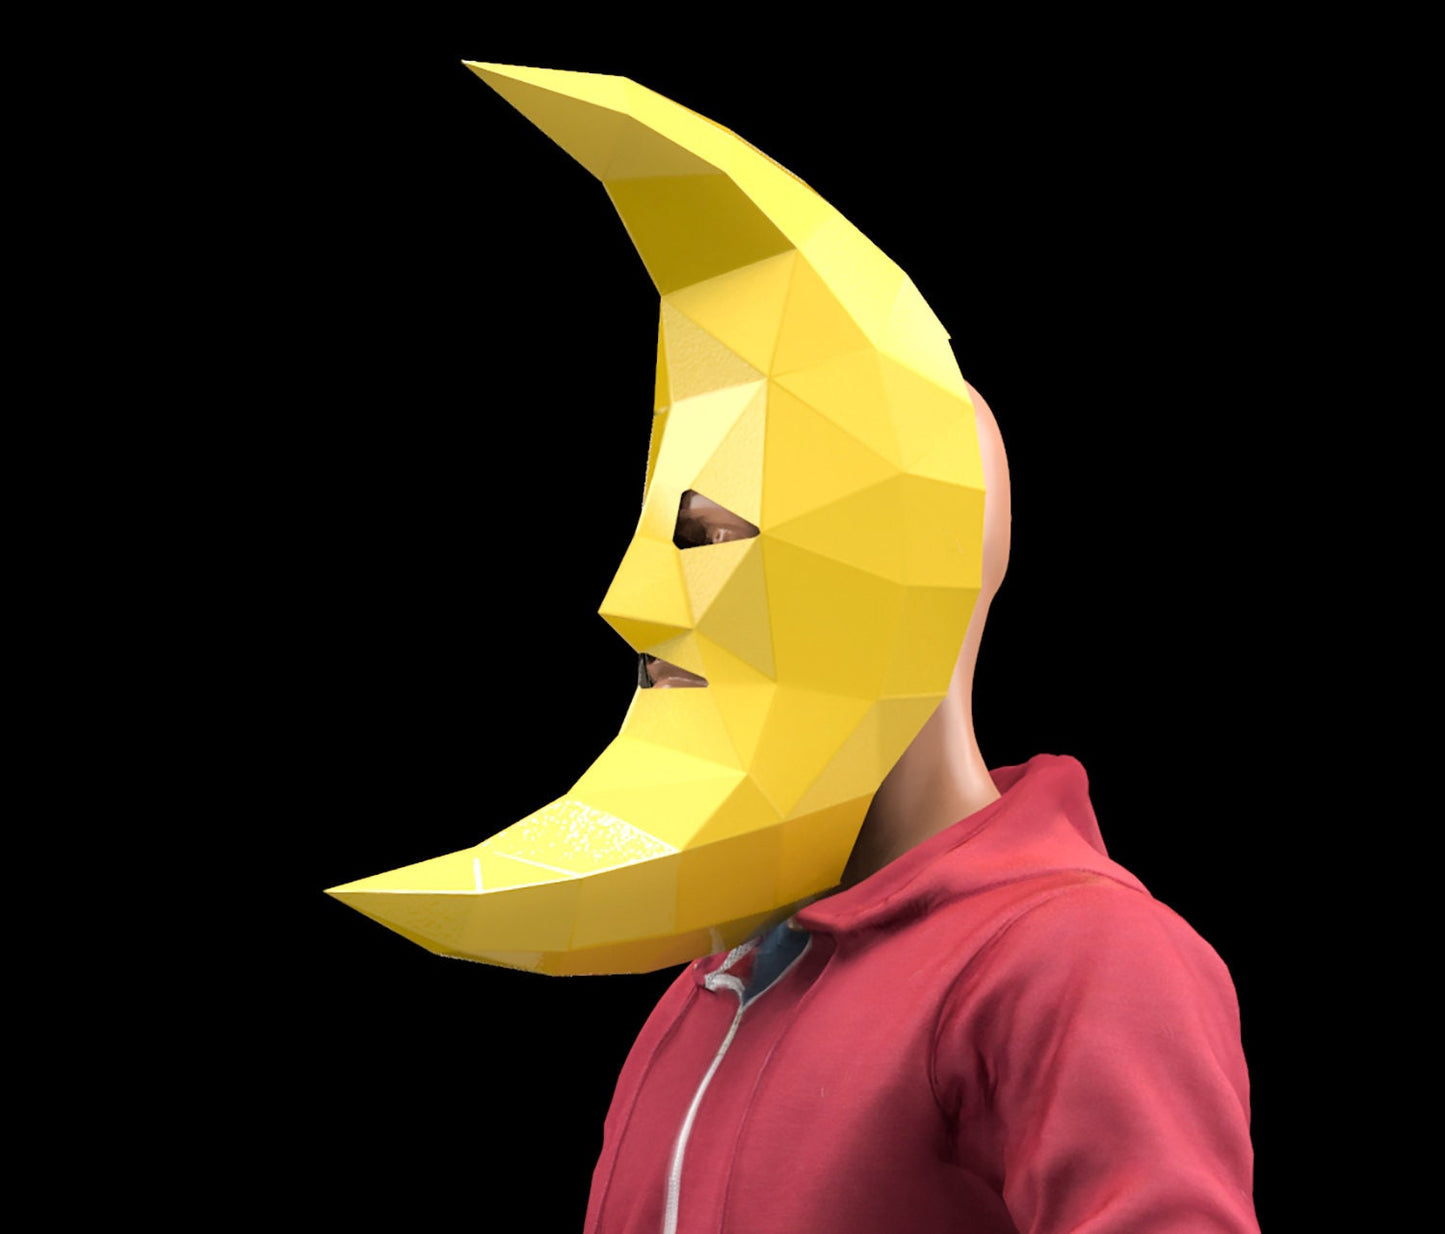 Moon Mask